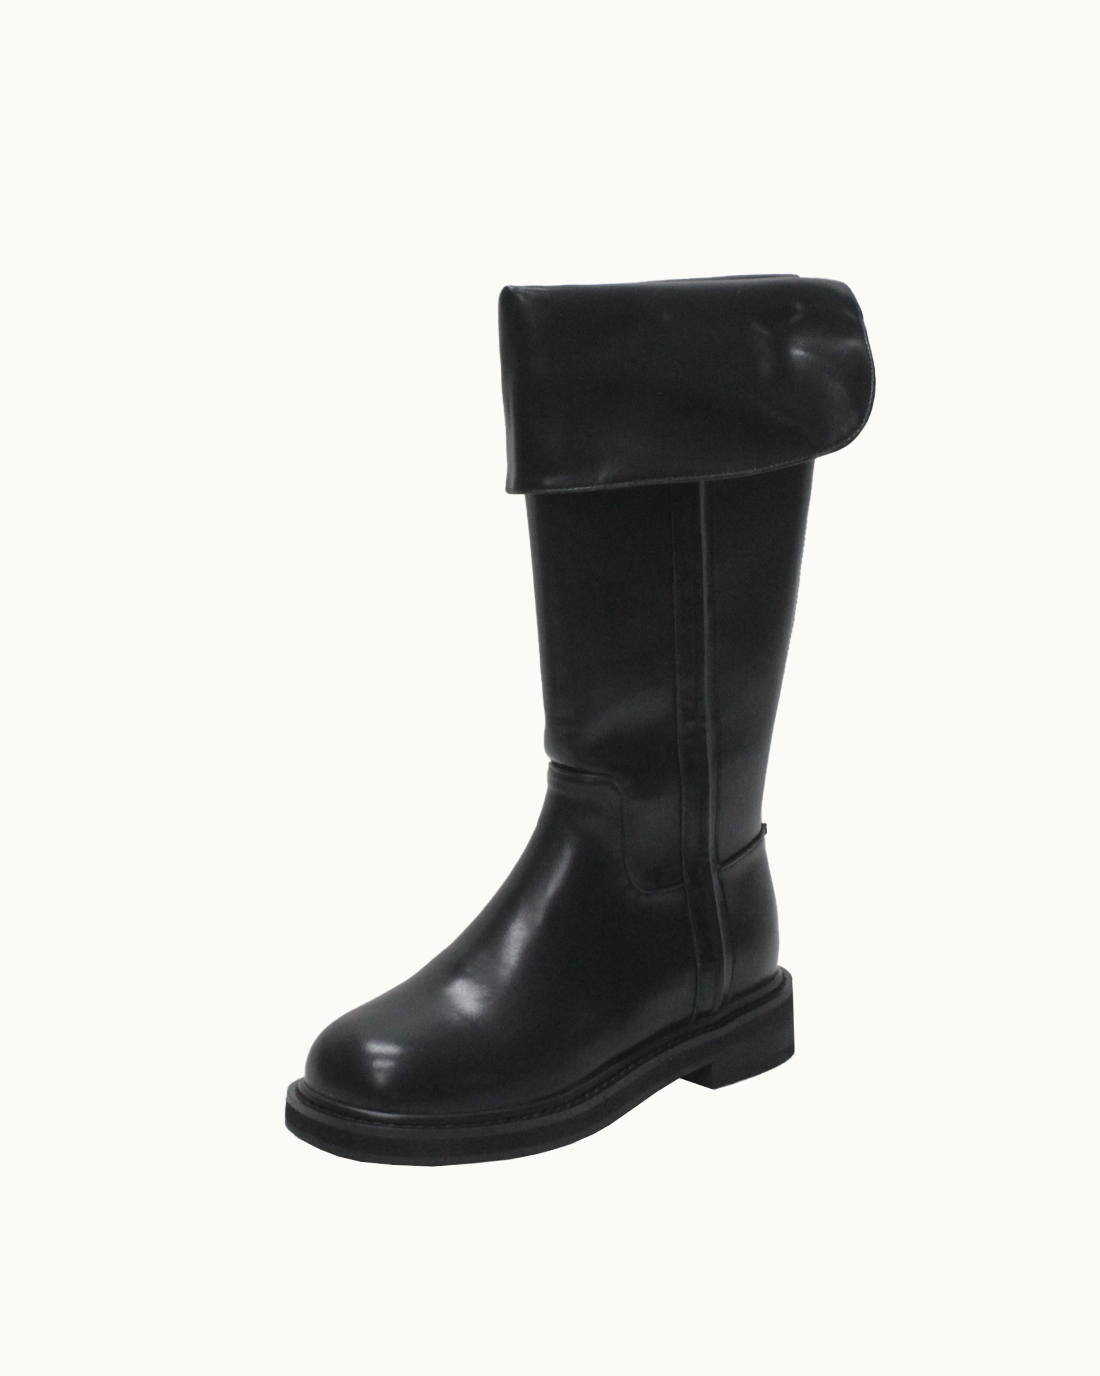 Gemma Cuffs Long Boots (Black)